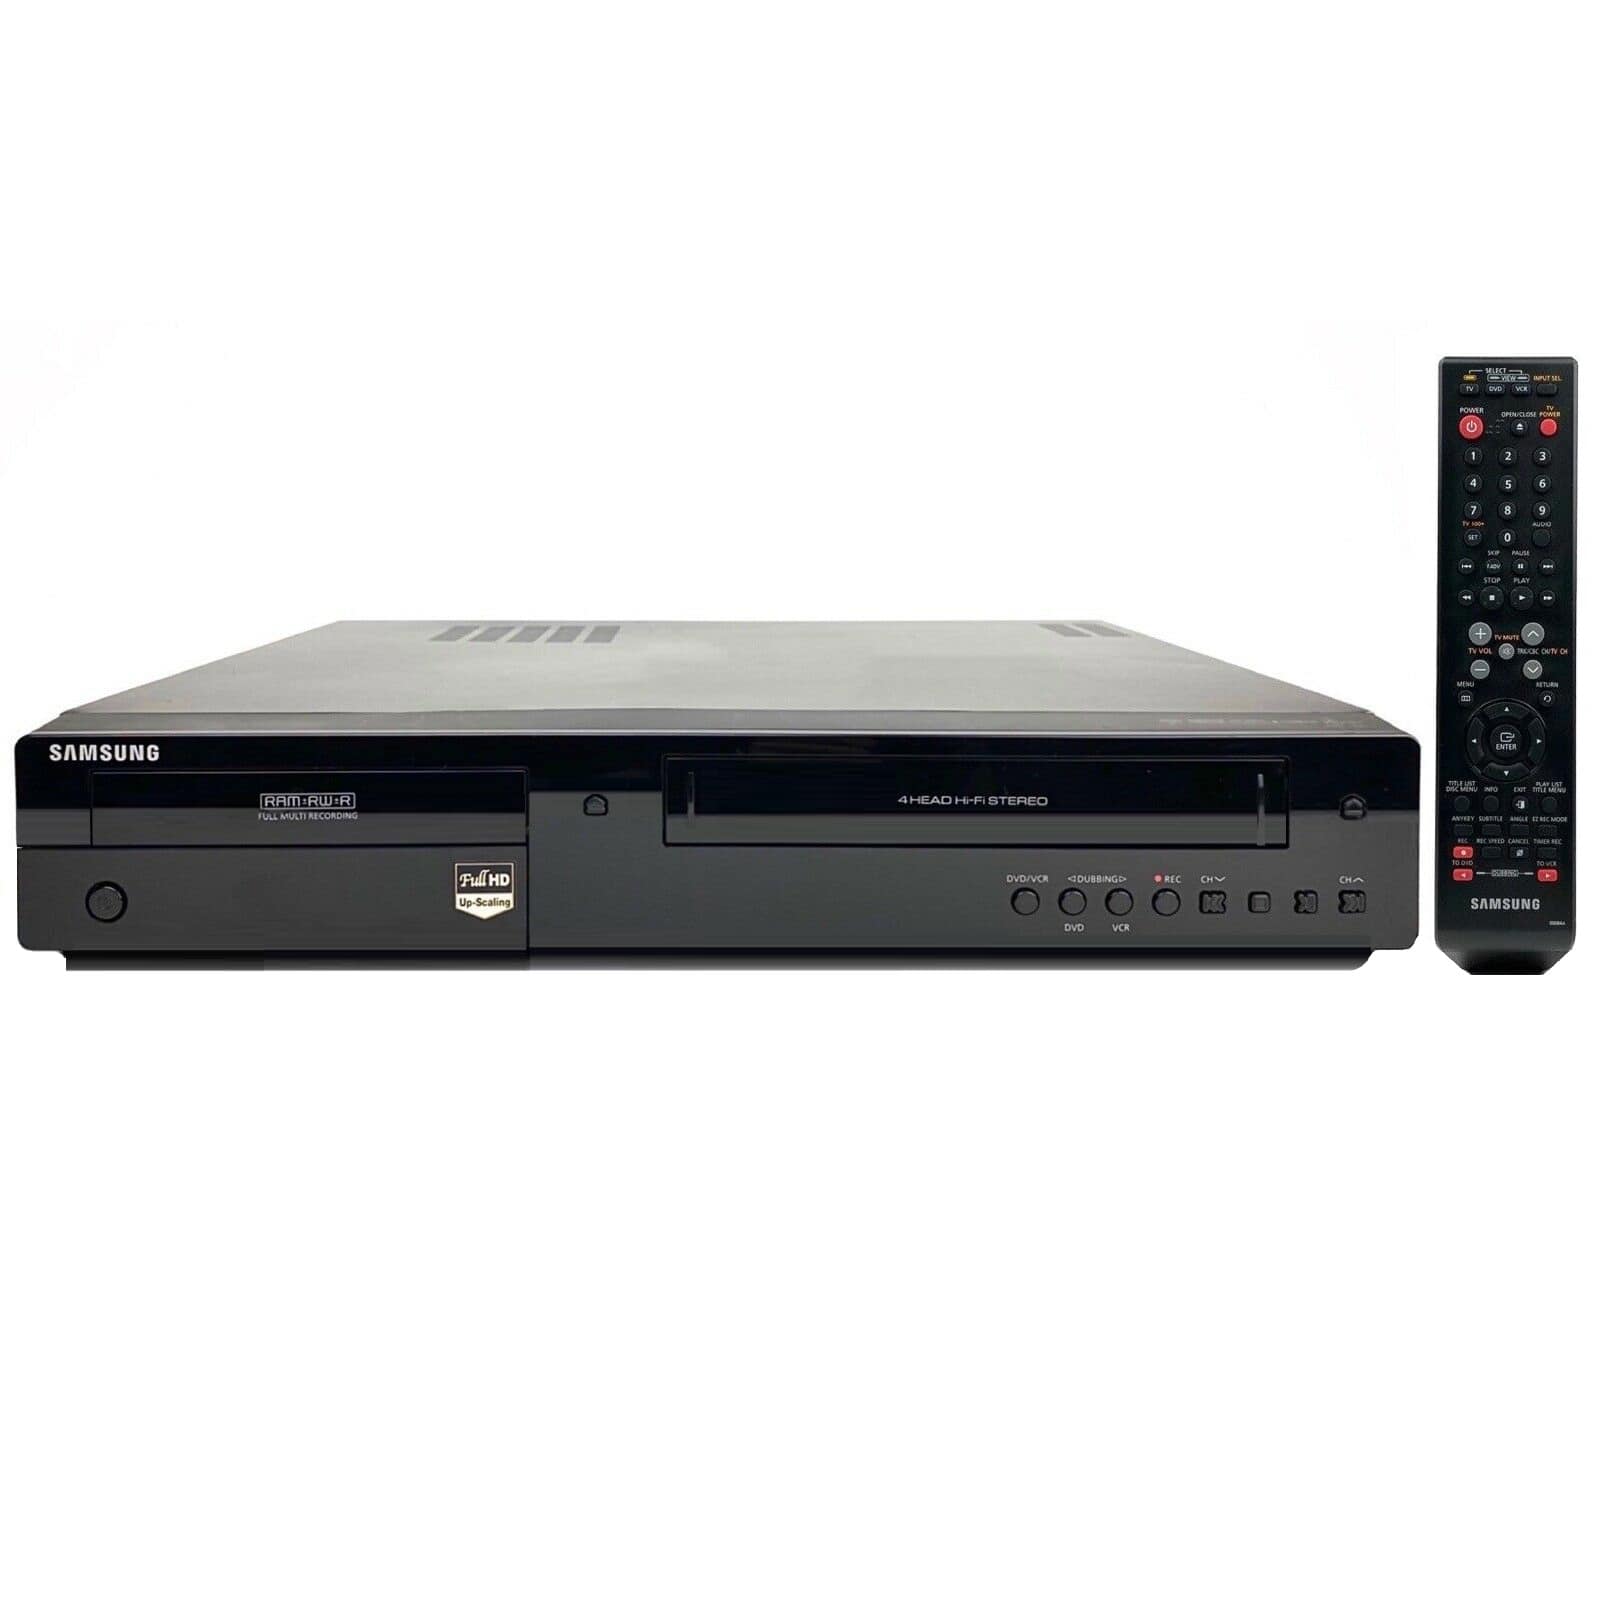 Bermad Riet Assimileren Samsung DVD-VR375 DVD Recorder DVD VCR Combo For Sale | TekRevolt